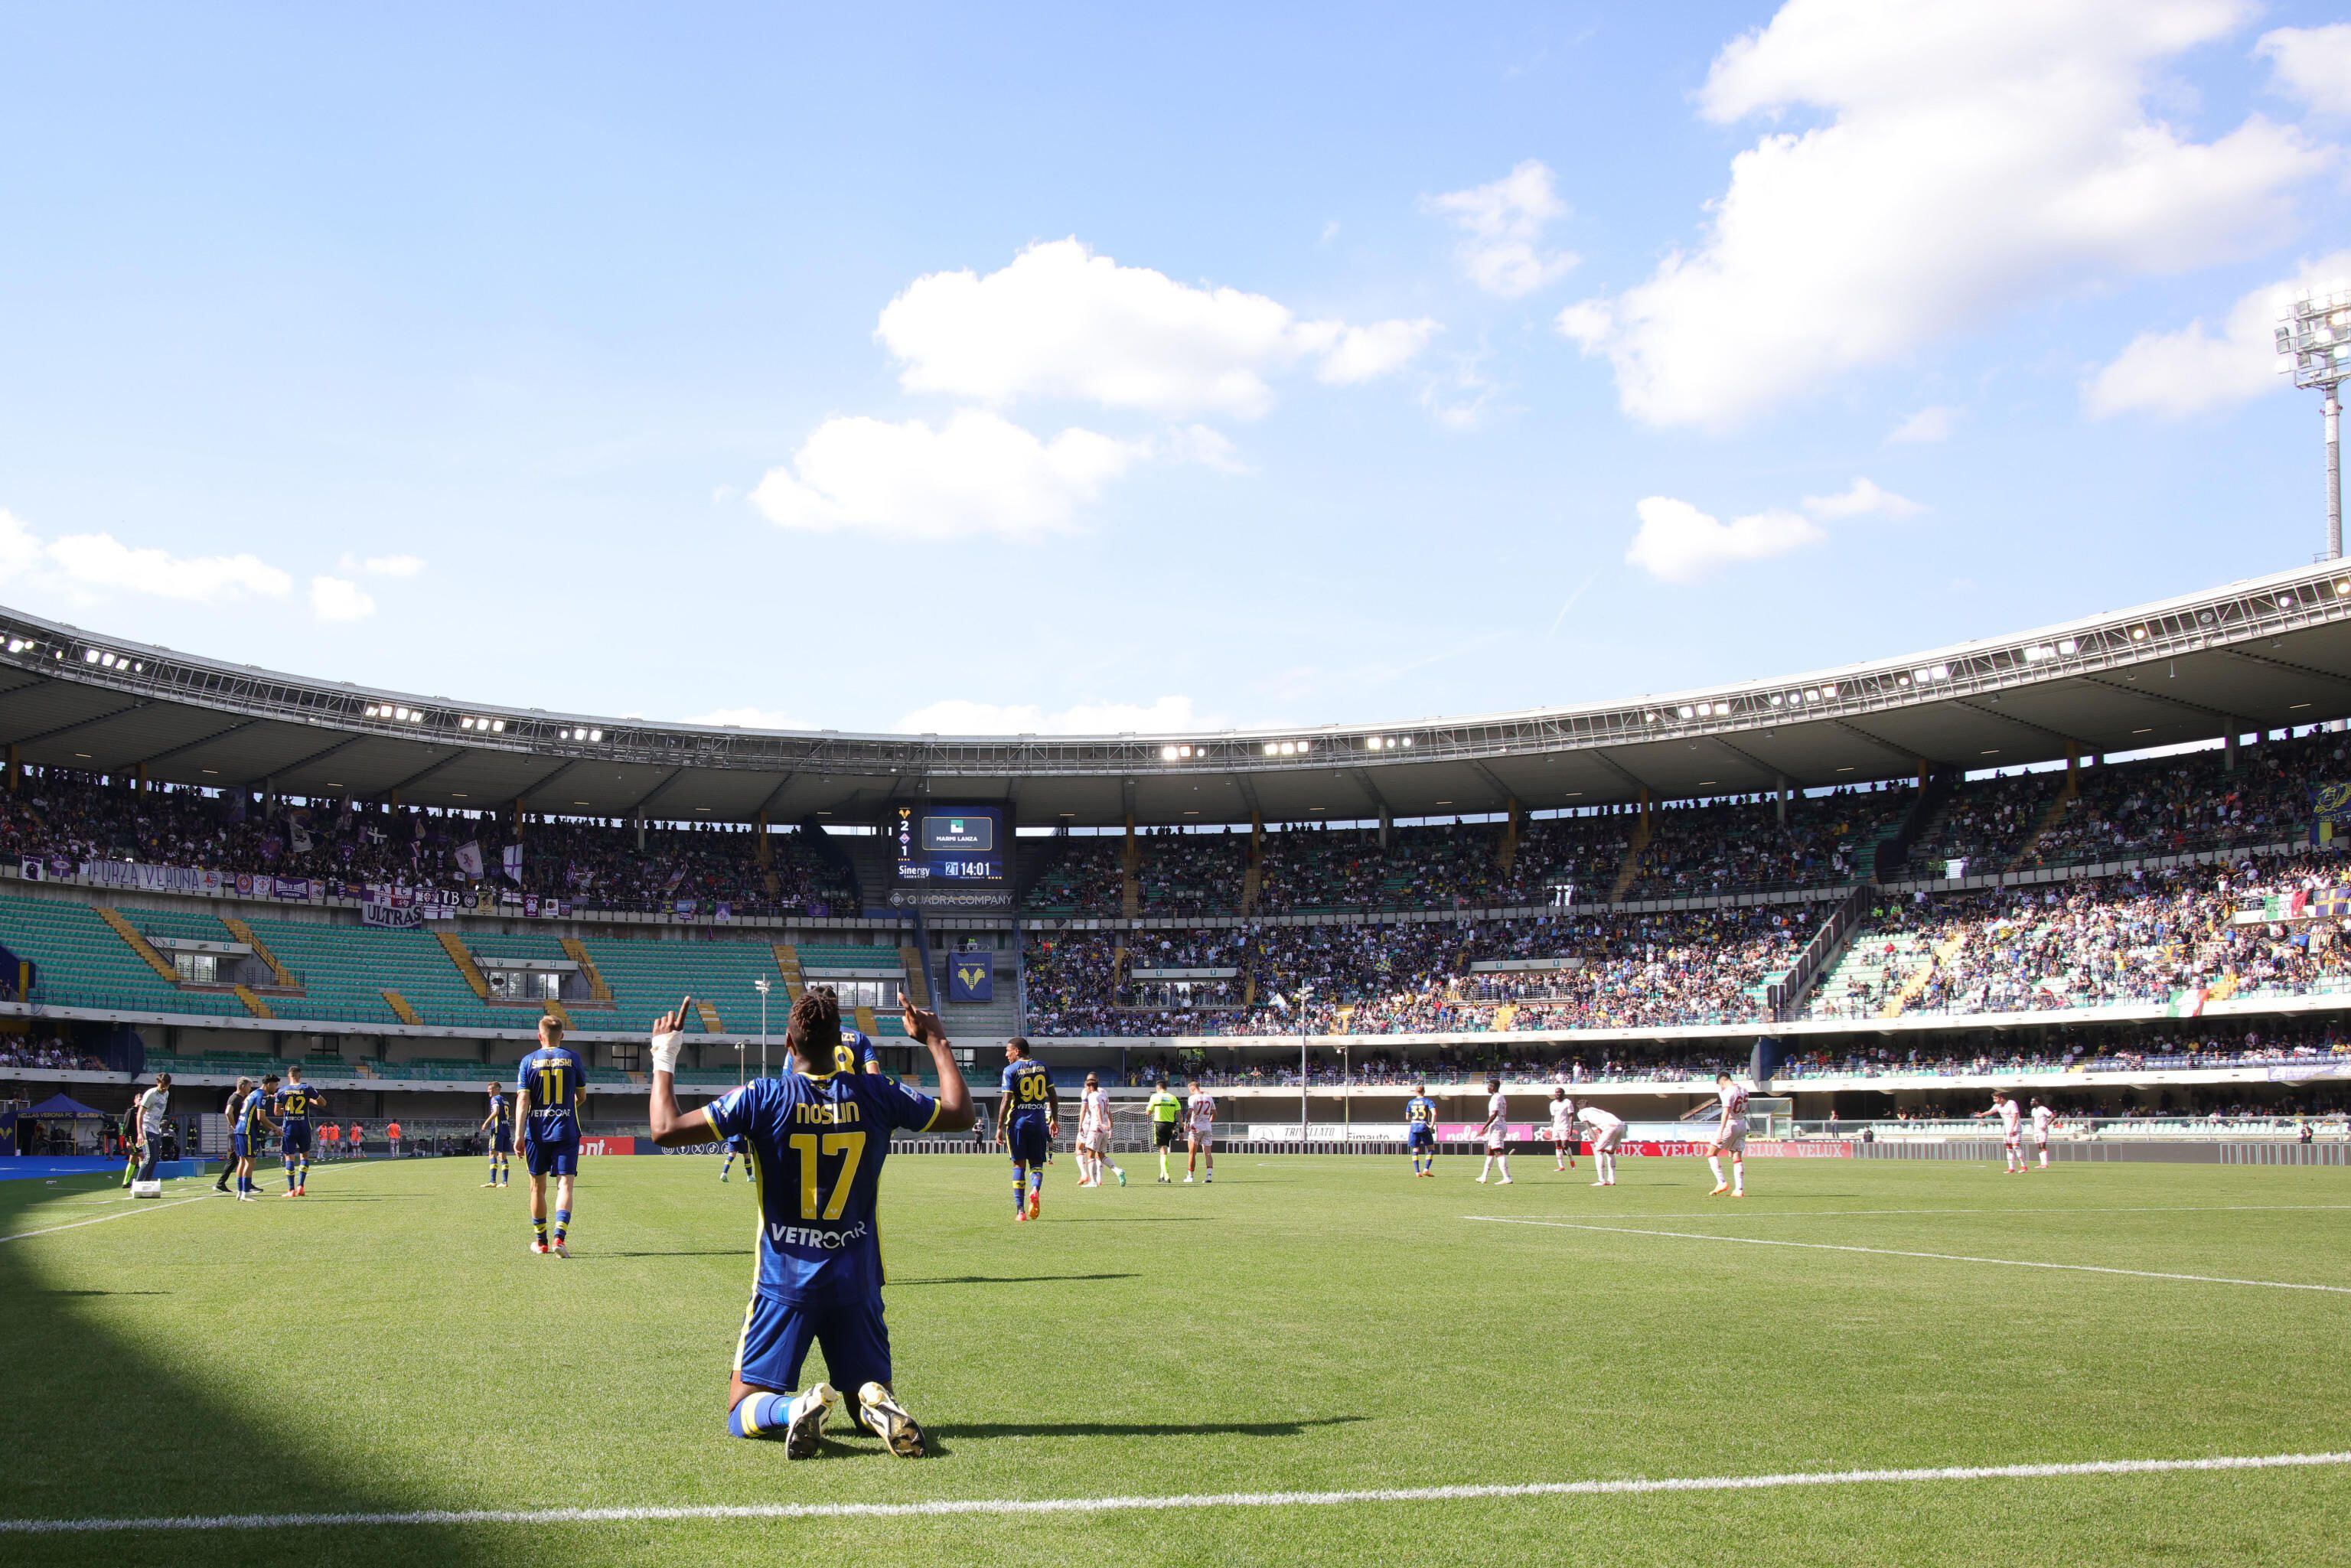 Paso adelante del Hellas Verona y 0-0 inquietante entre Frosinone y Empoli